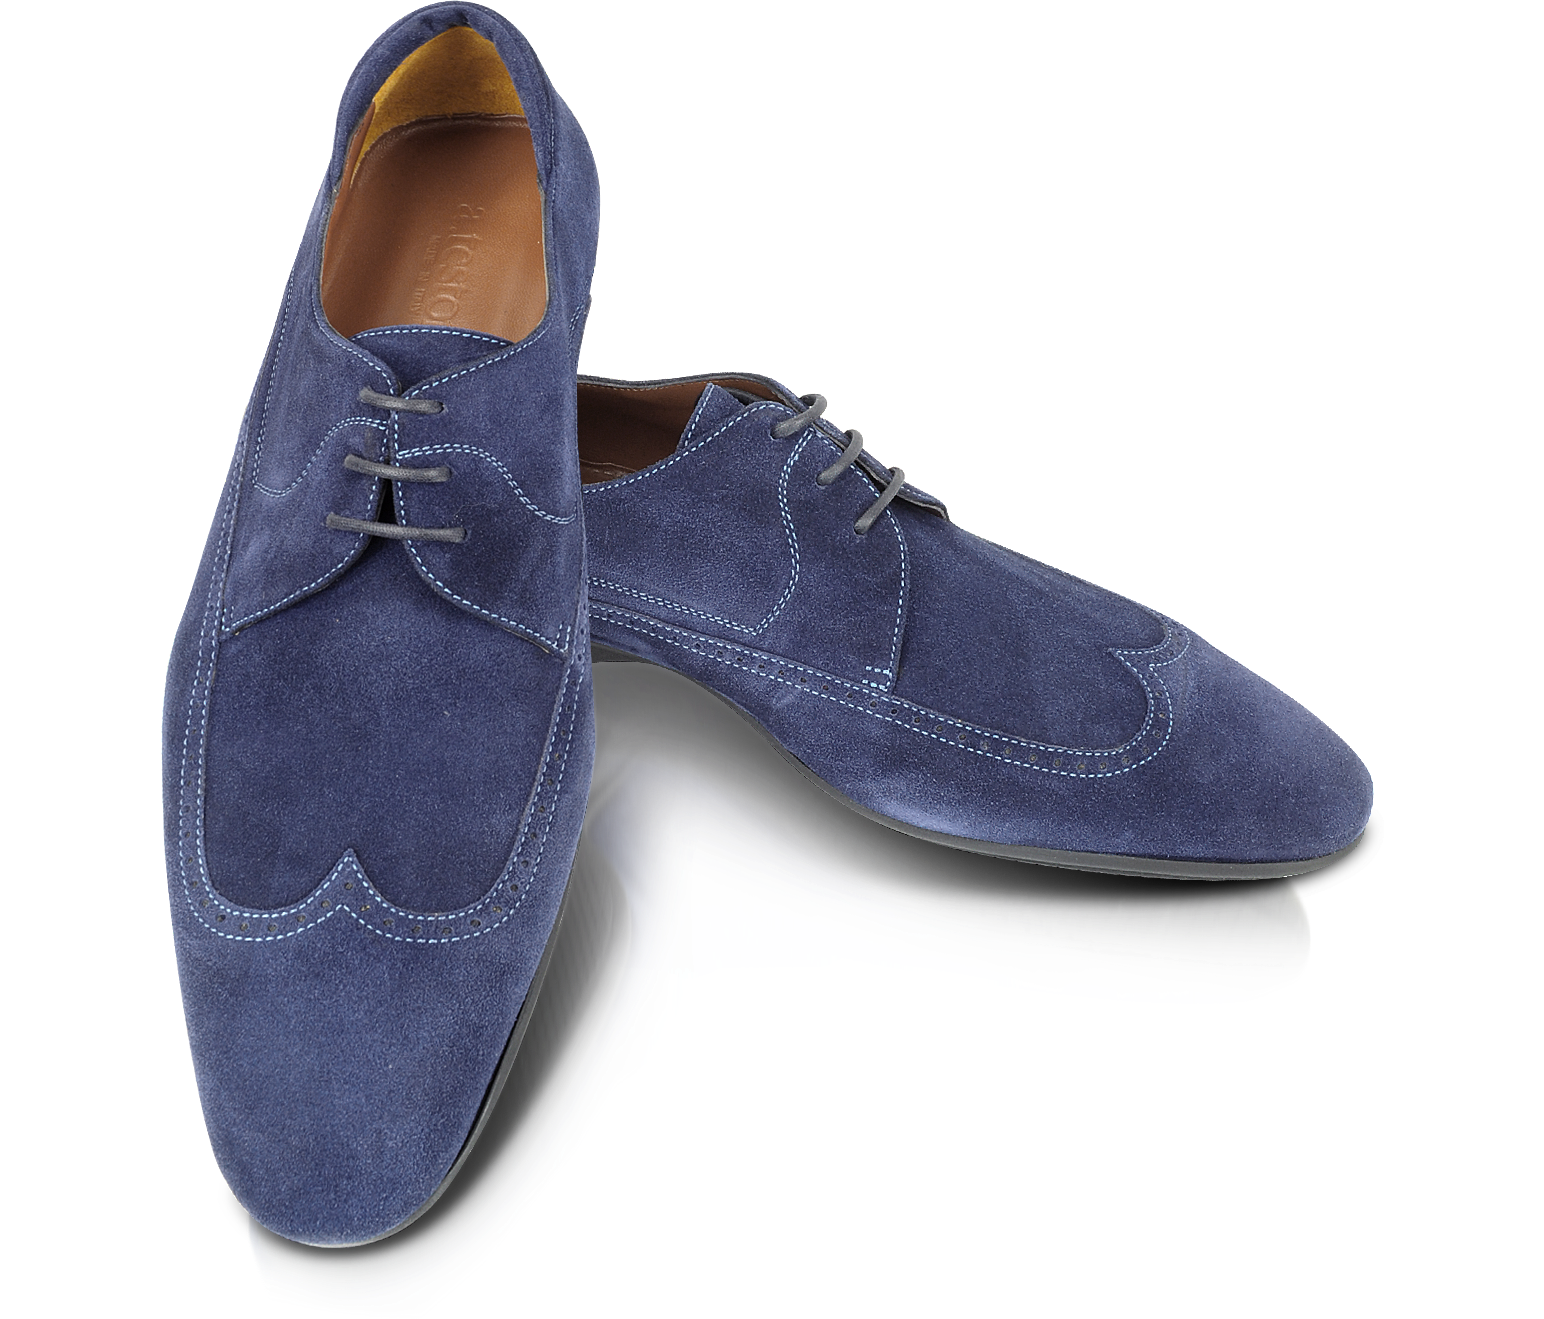 blue suede wingtip shoes